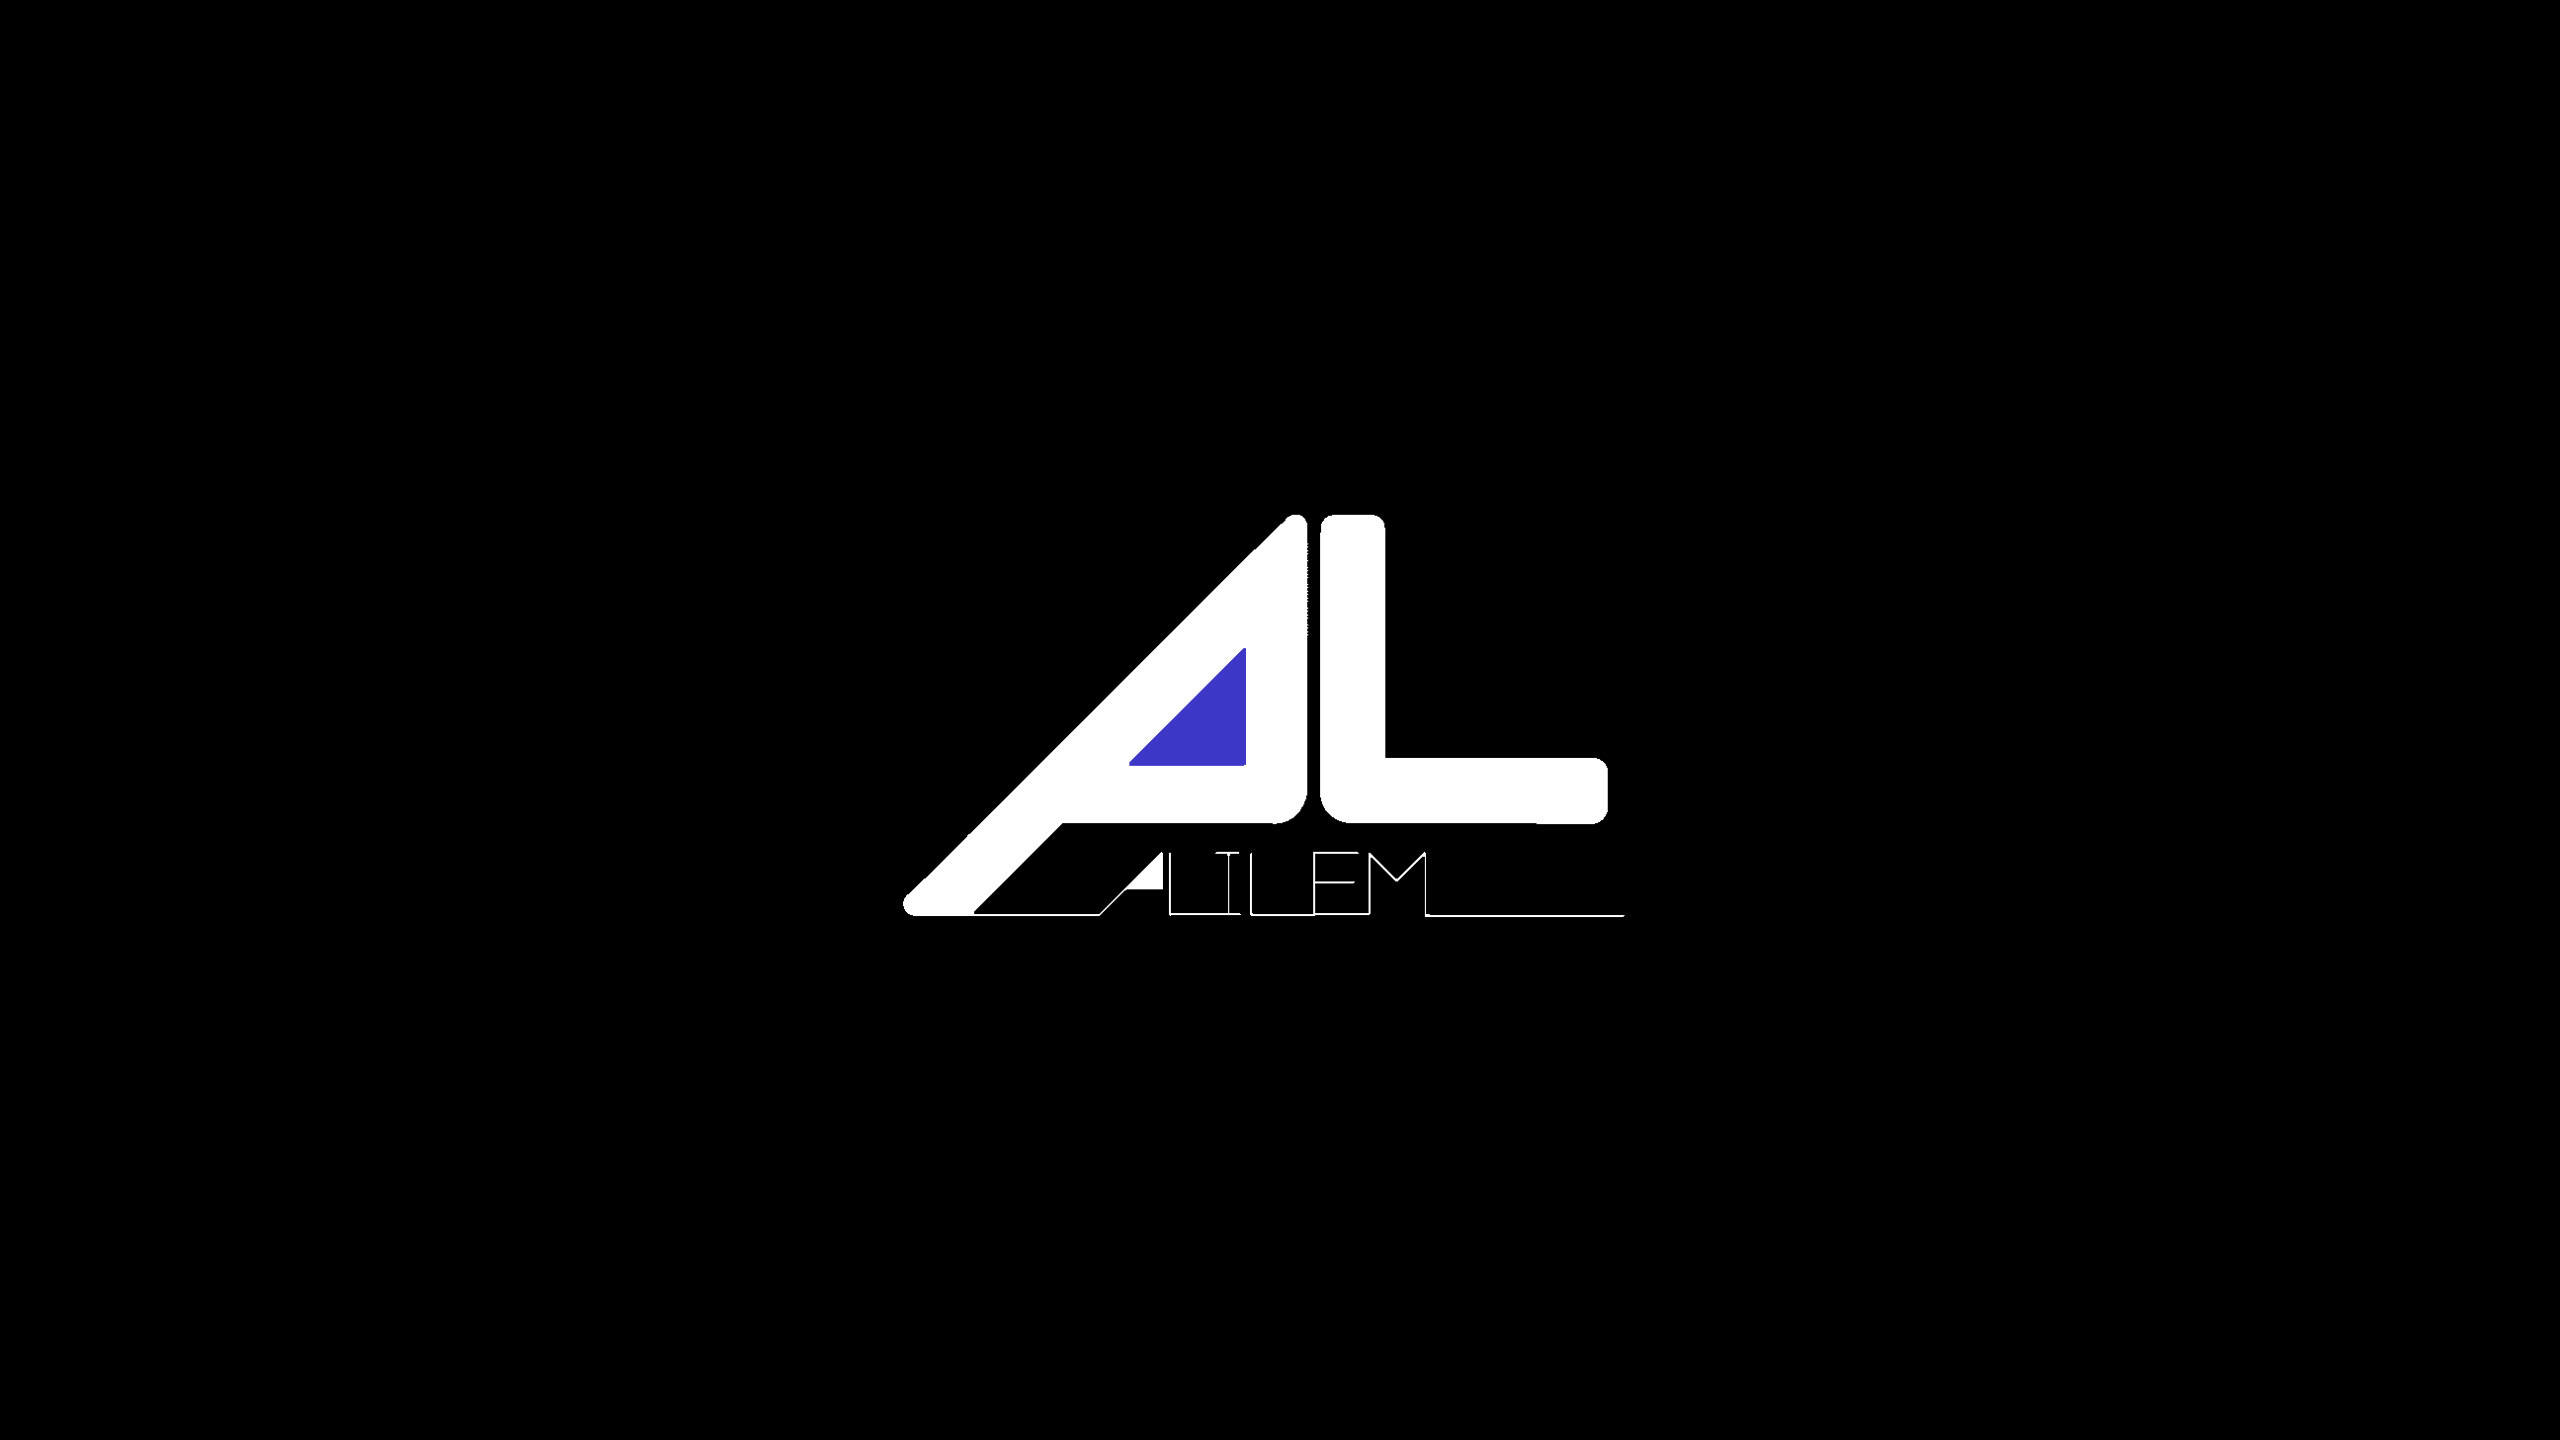 アリレム / ALILEM